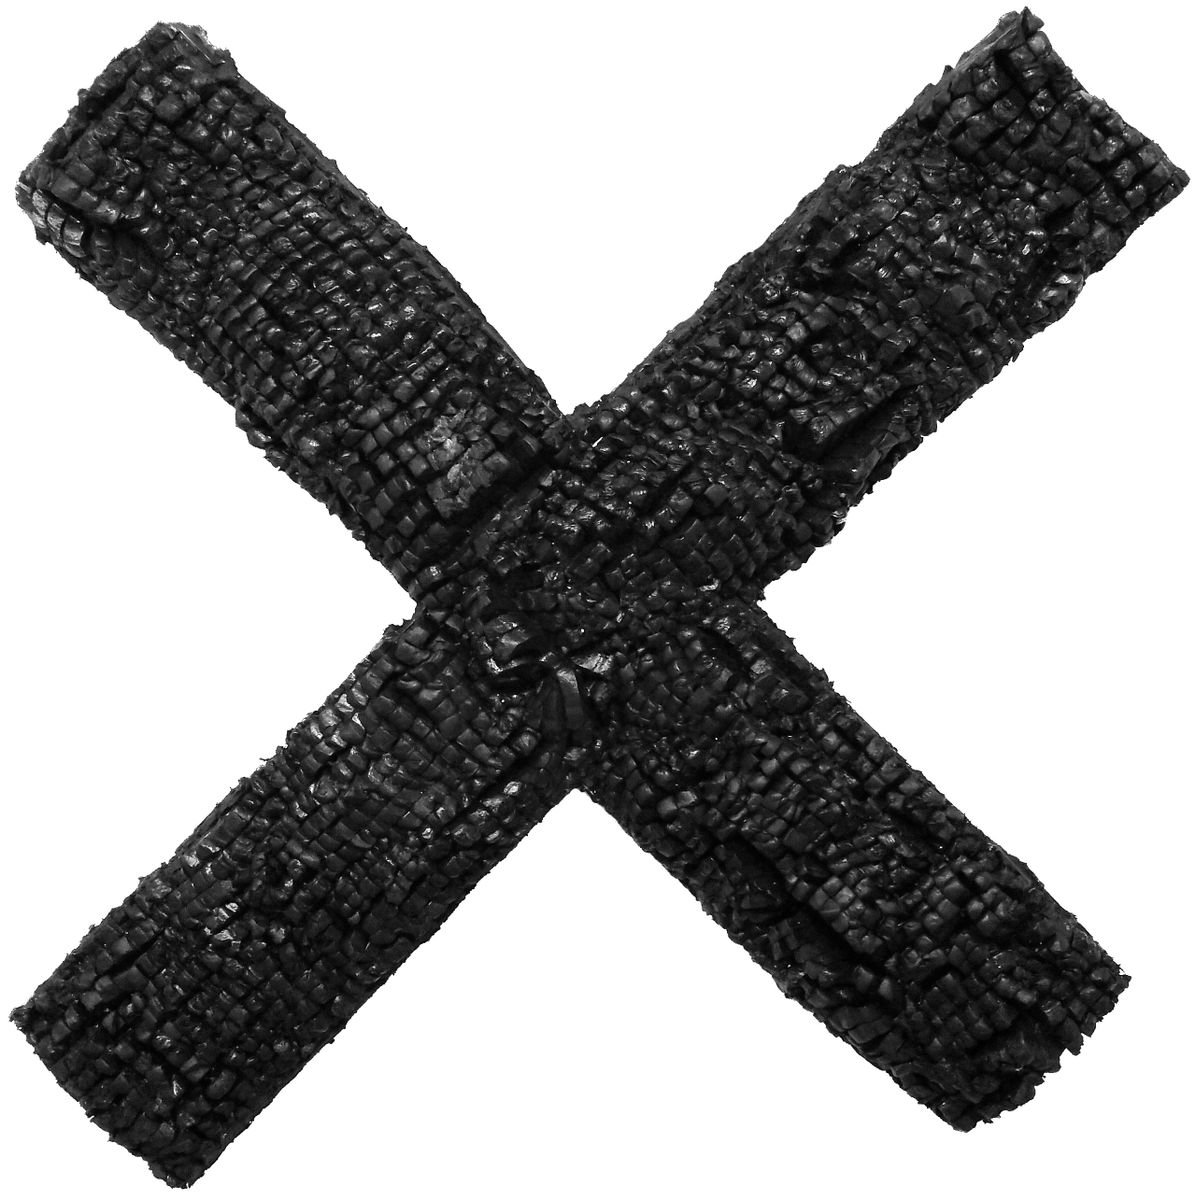 Cross #2 by JakBox